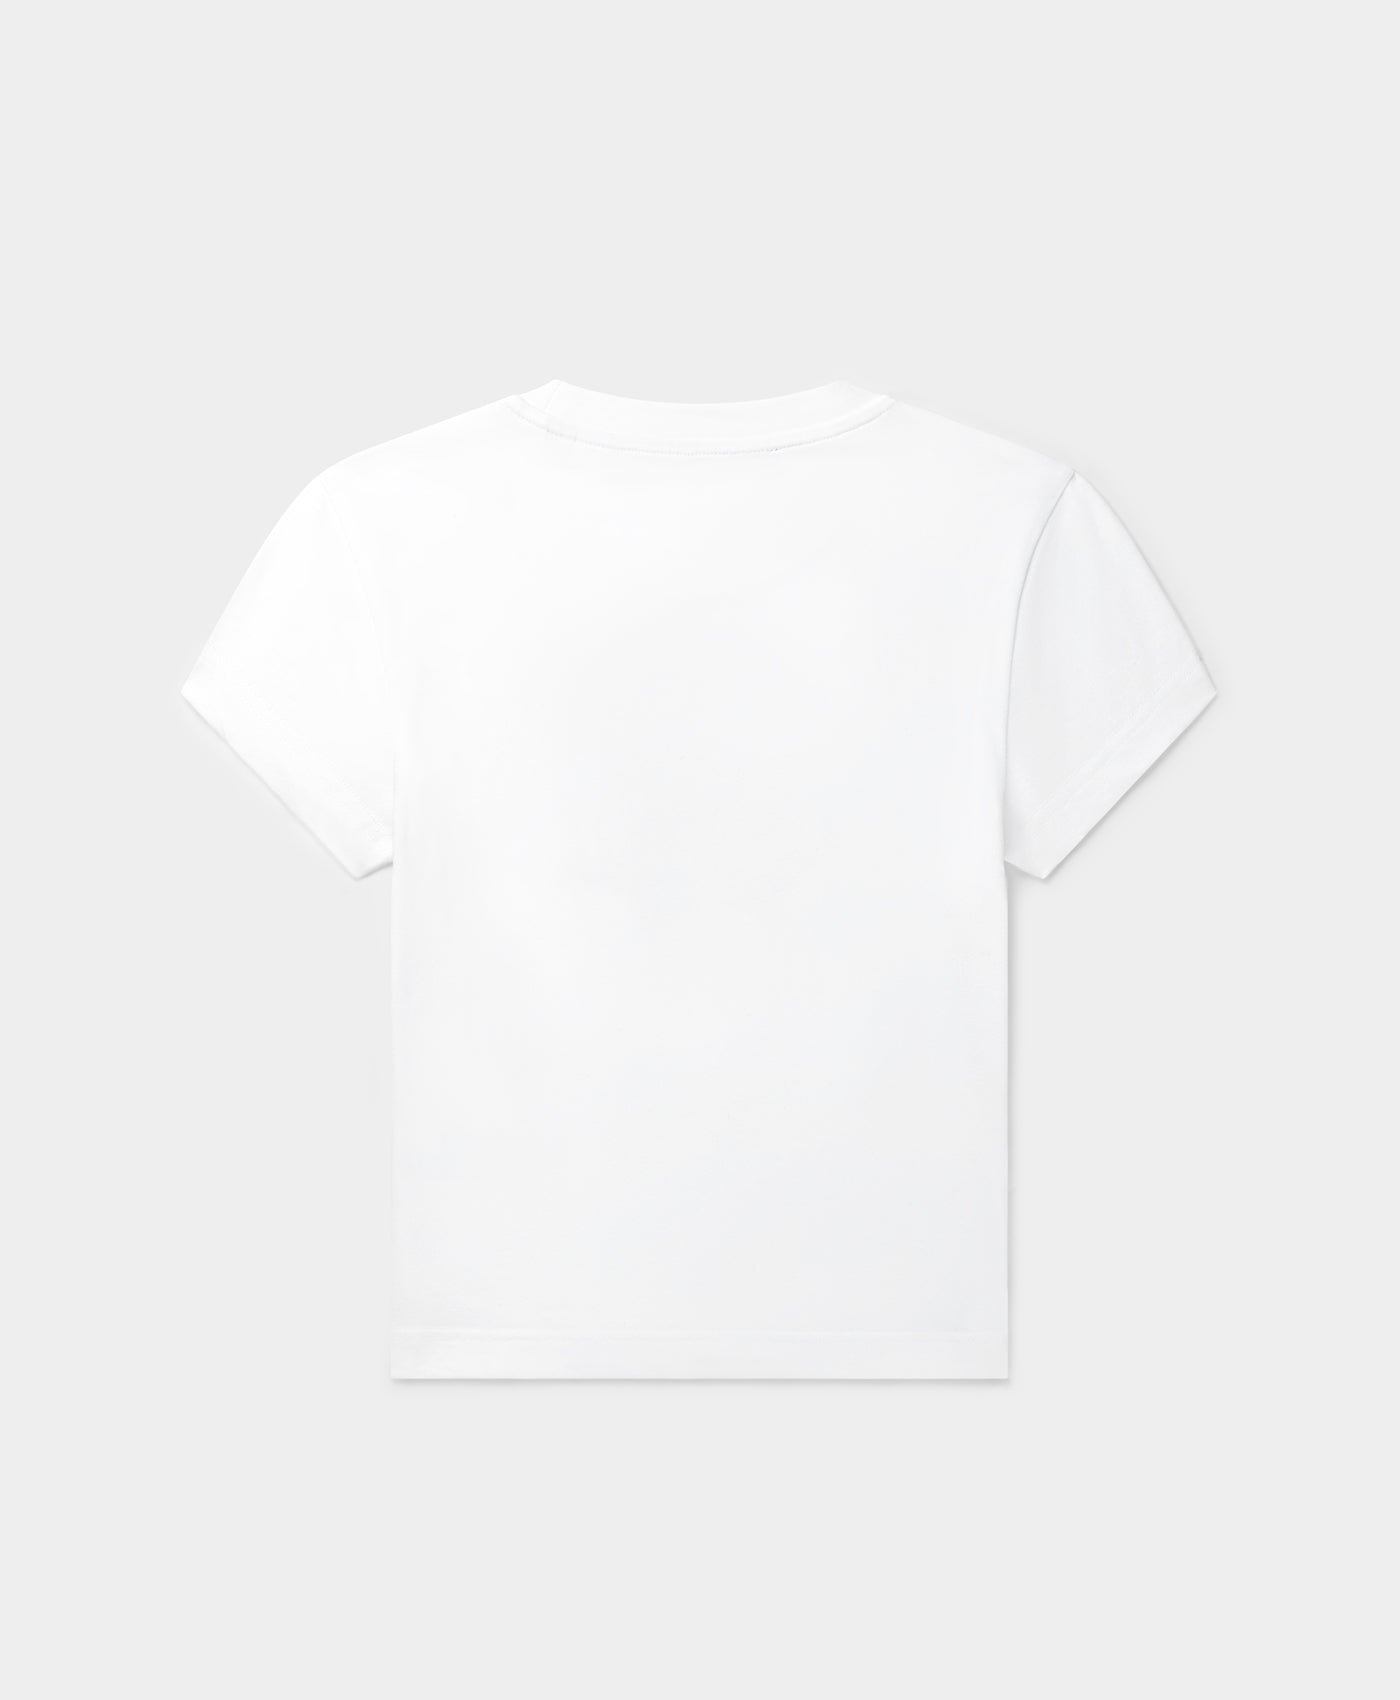 DP - White Glow Cropped T-Shirt - Packshot - Rear